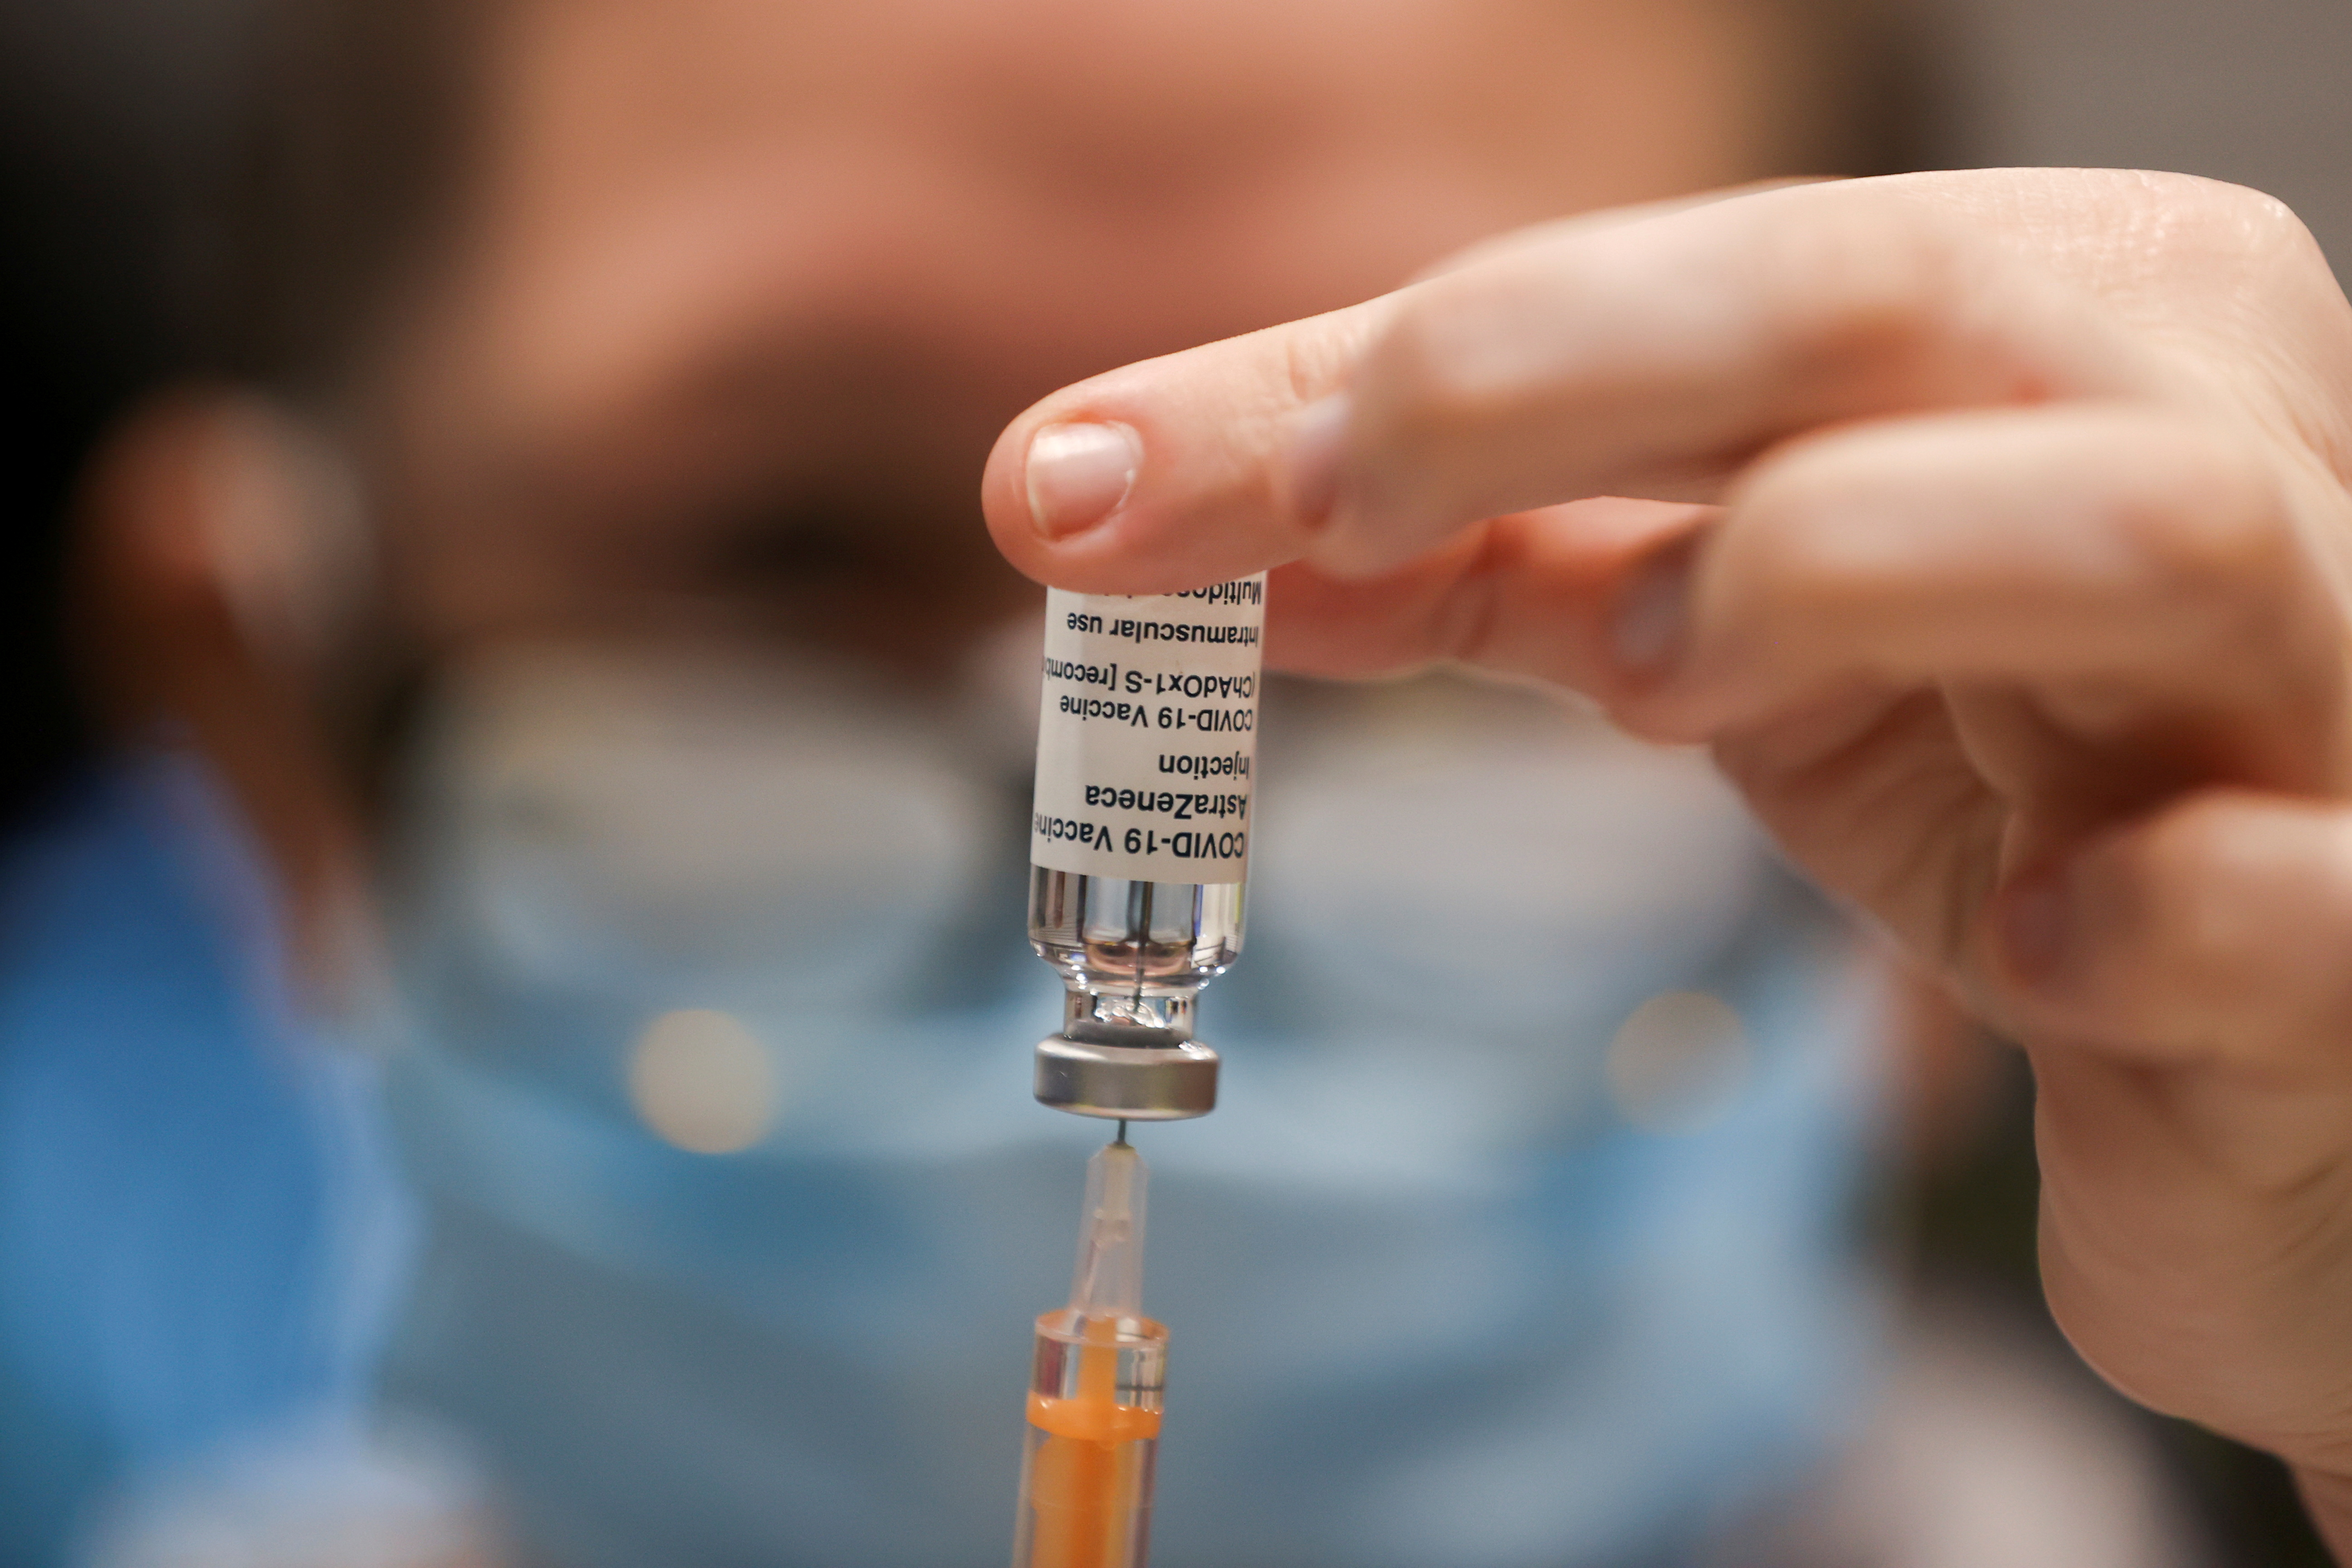 Peu de doses disponibles et des délais: la vaccination en entreprise démarre au ralenti